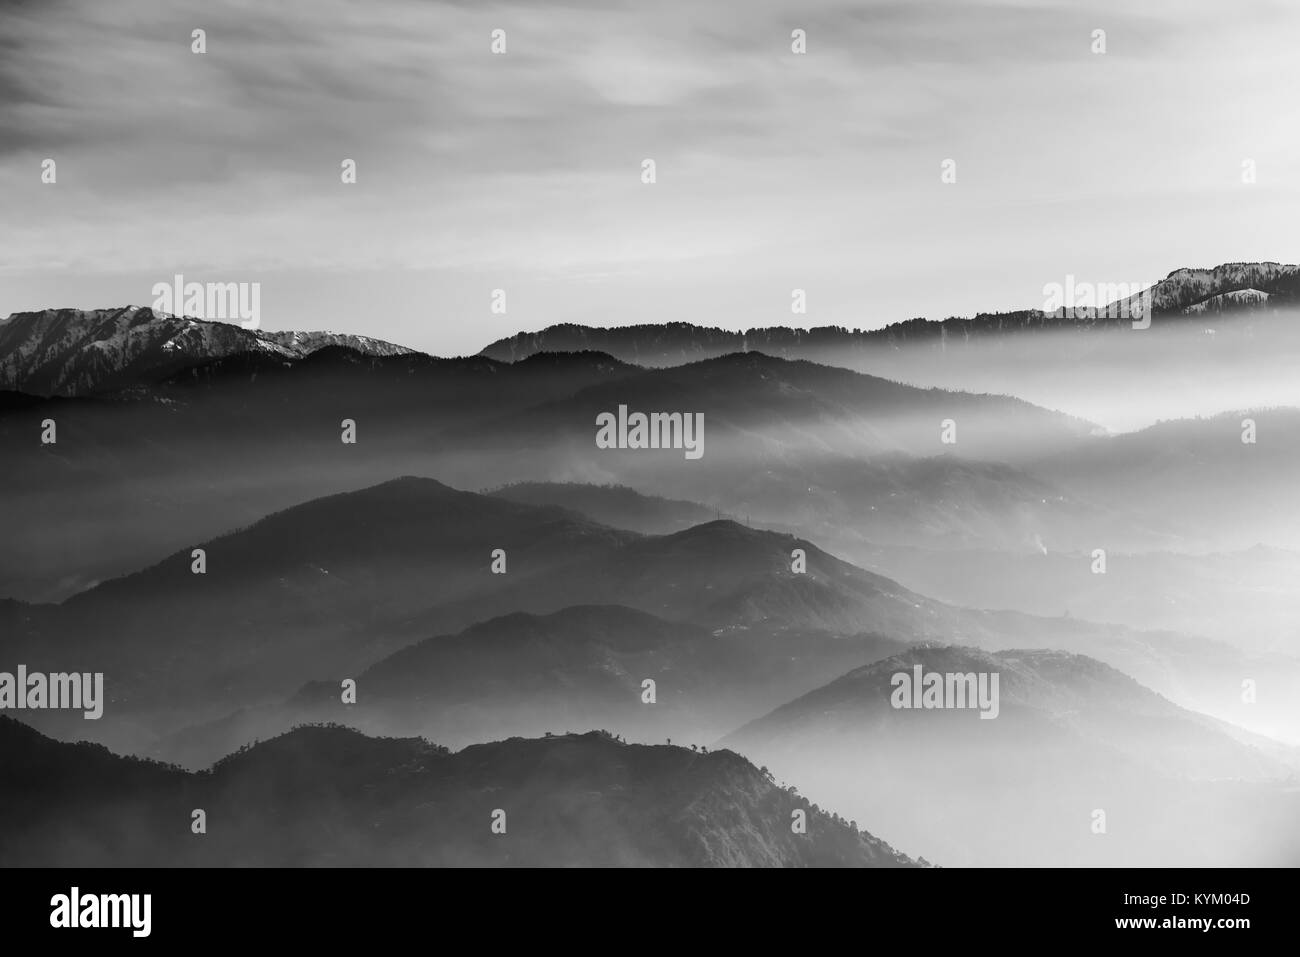 Flowing mountains at Prashar Lake, Mandi, Himachal Pradesh, India Stock Photo